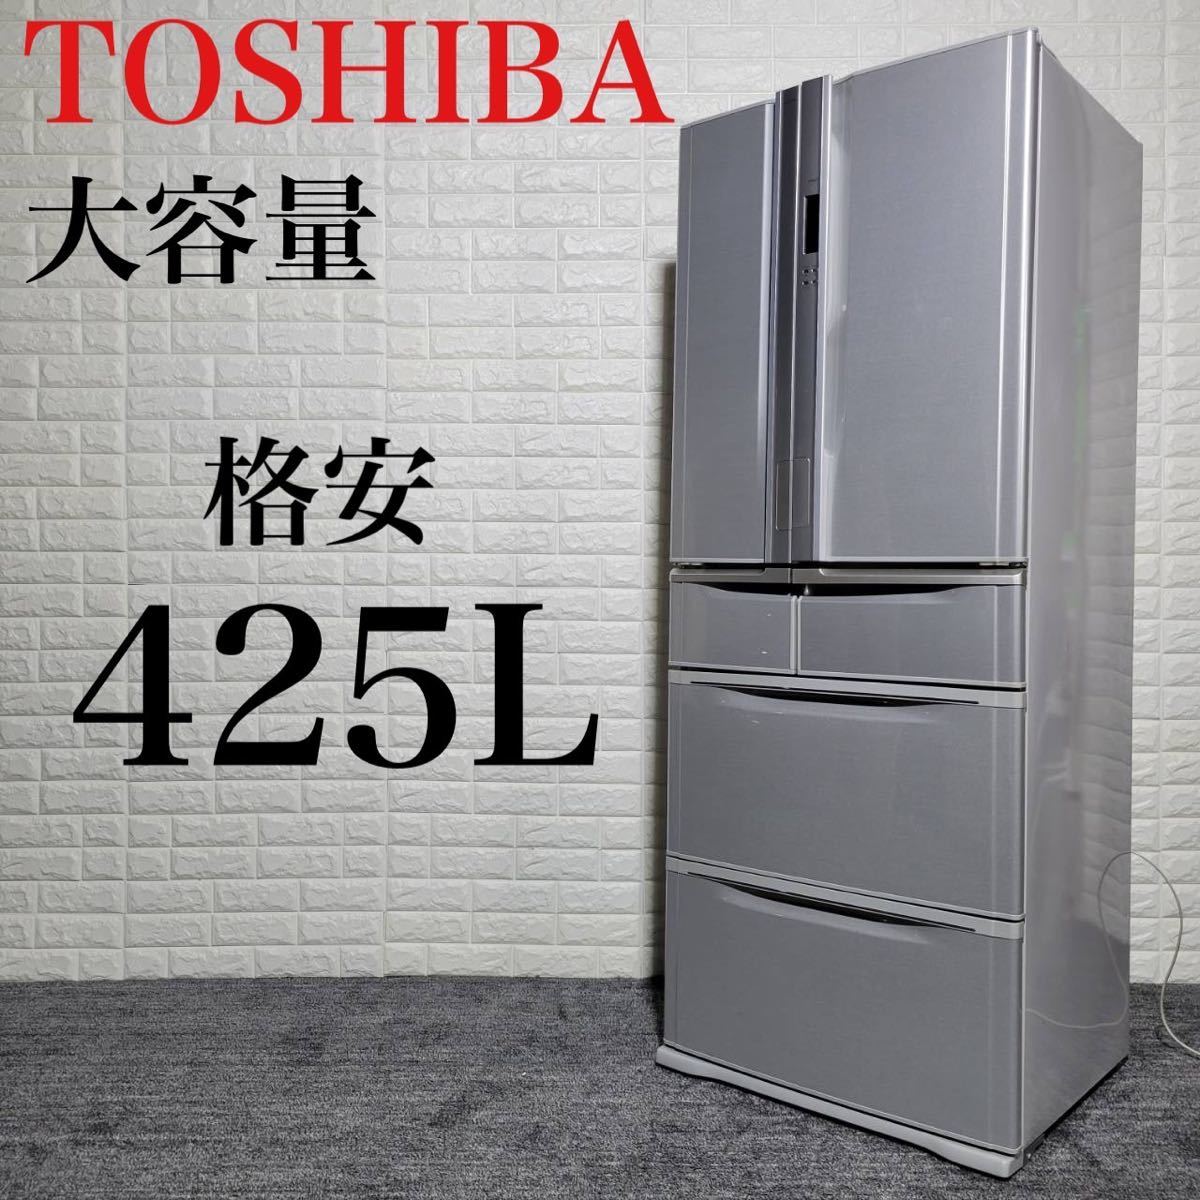 激安 TOSHIBA 冷蔵庫 GR-A43F 大容量 格安 ファミリー向け M0536 400 ...